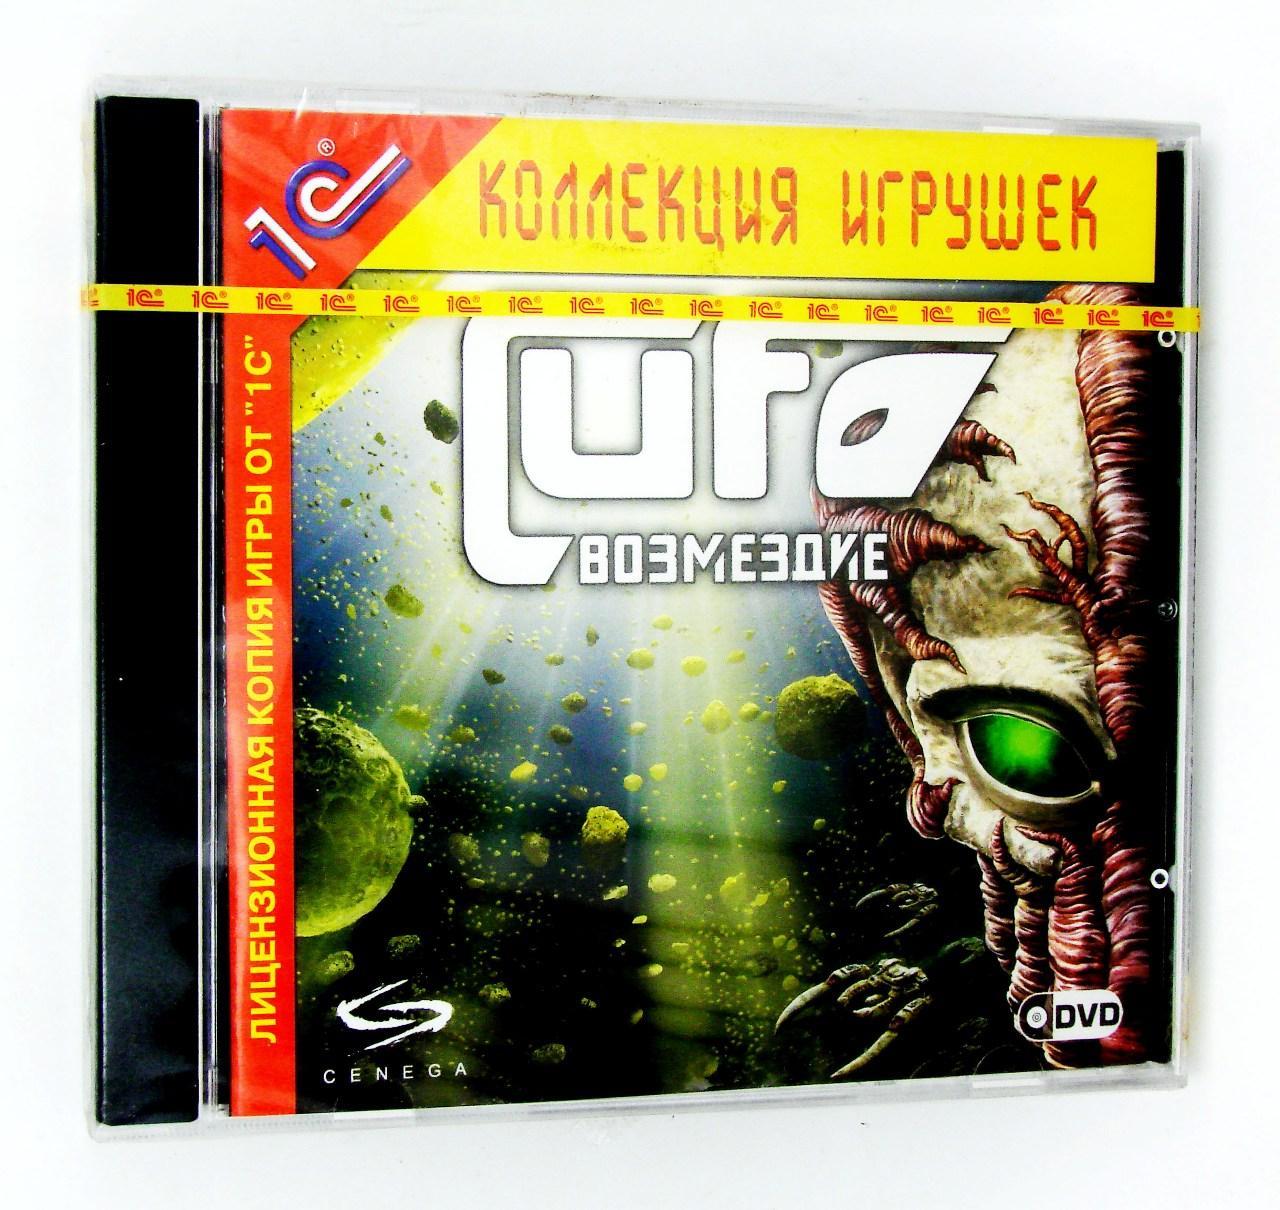 Компьютерный компакт-диск UFO. Возмездие (ПК), фирма "1С", DVD